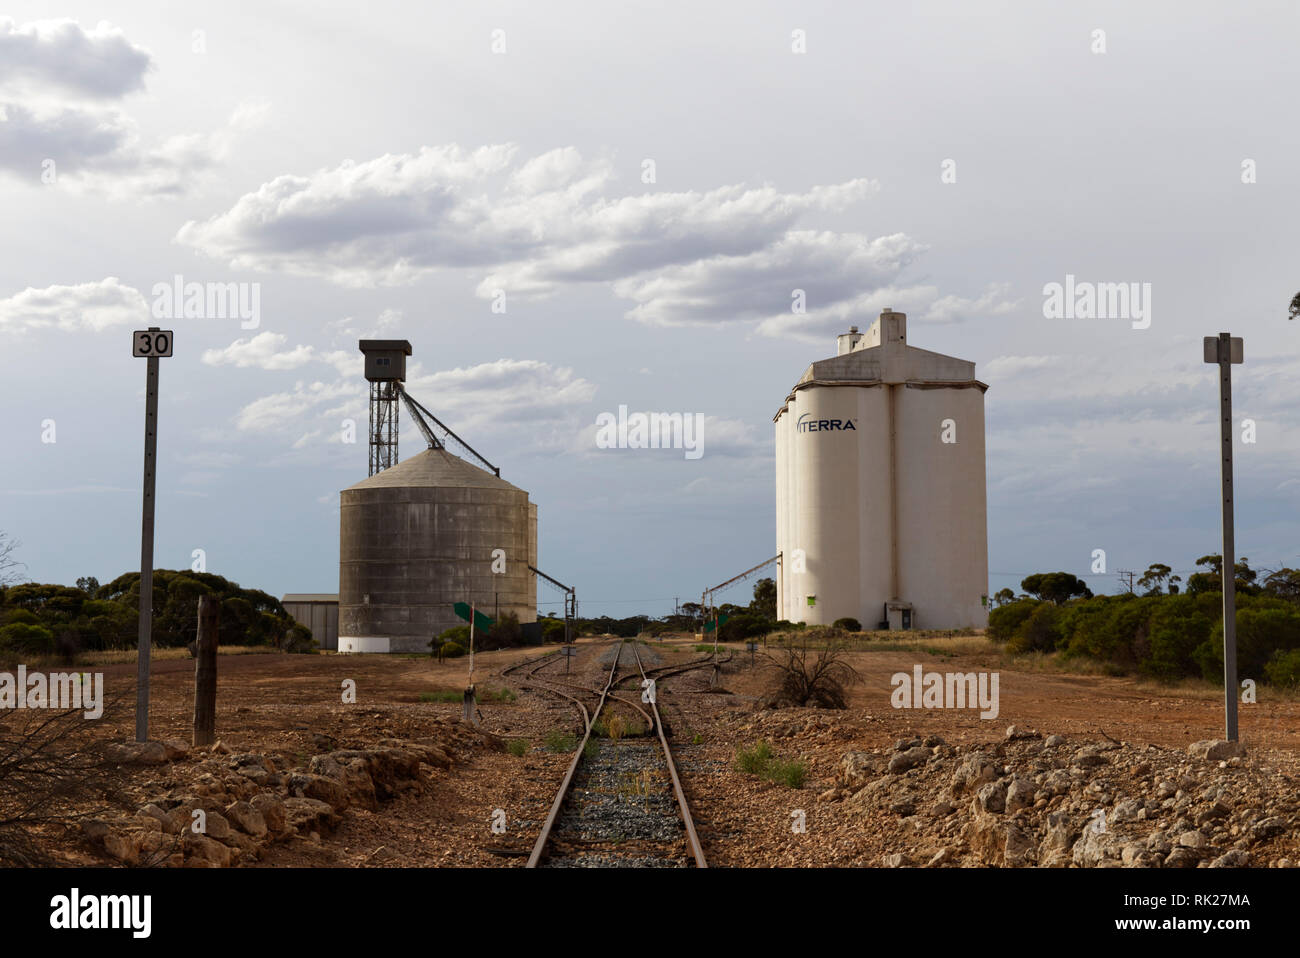 Le silo à grain par la voie ferrée au sud de l'Australie Kyancutta Banque D'Images